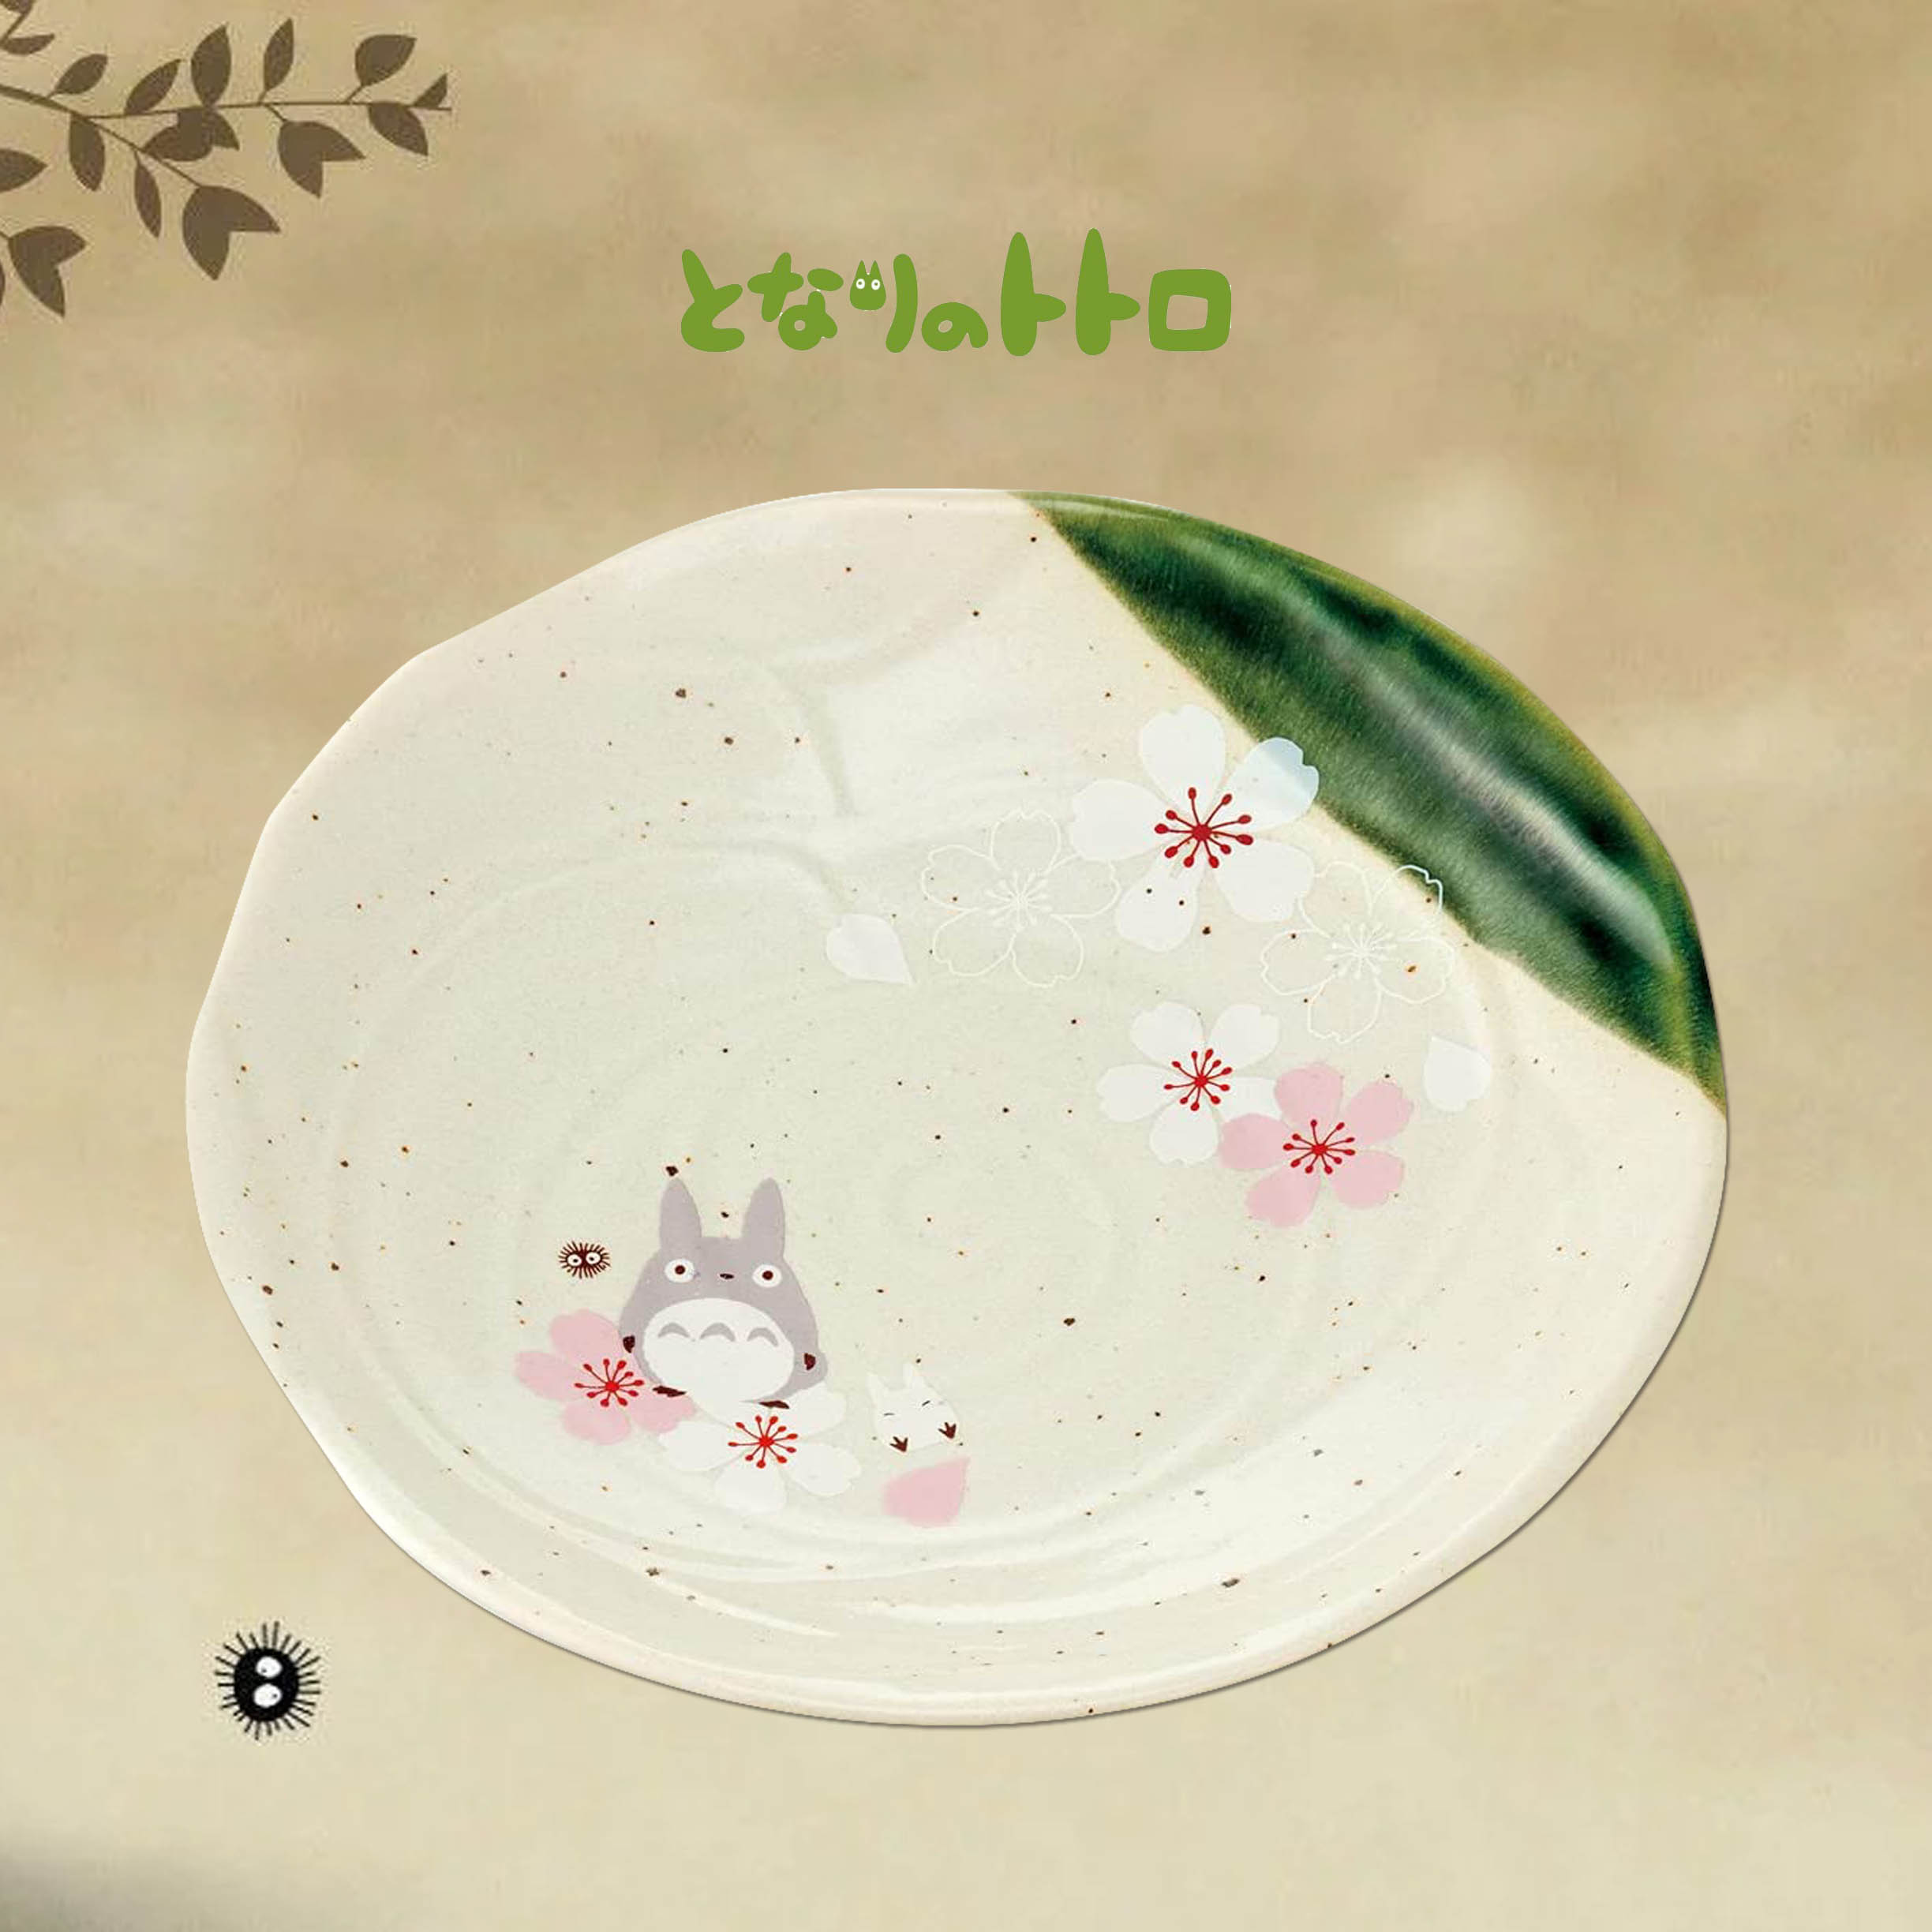 陶瓷深圓盤-龍貓 豆豆龍 TOTORO SKATER 日本進口正版授權